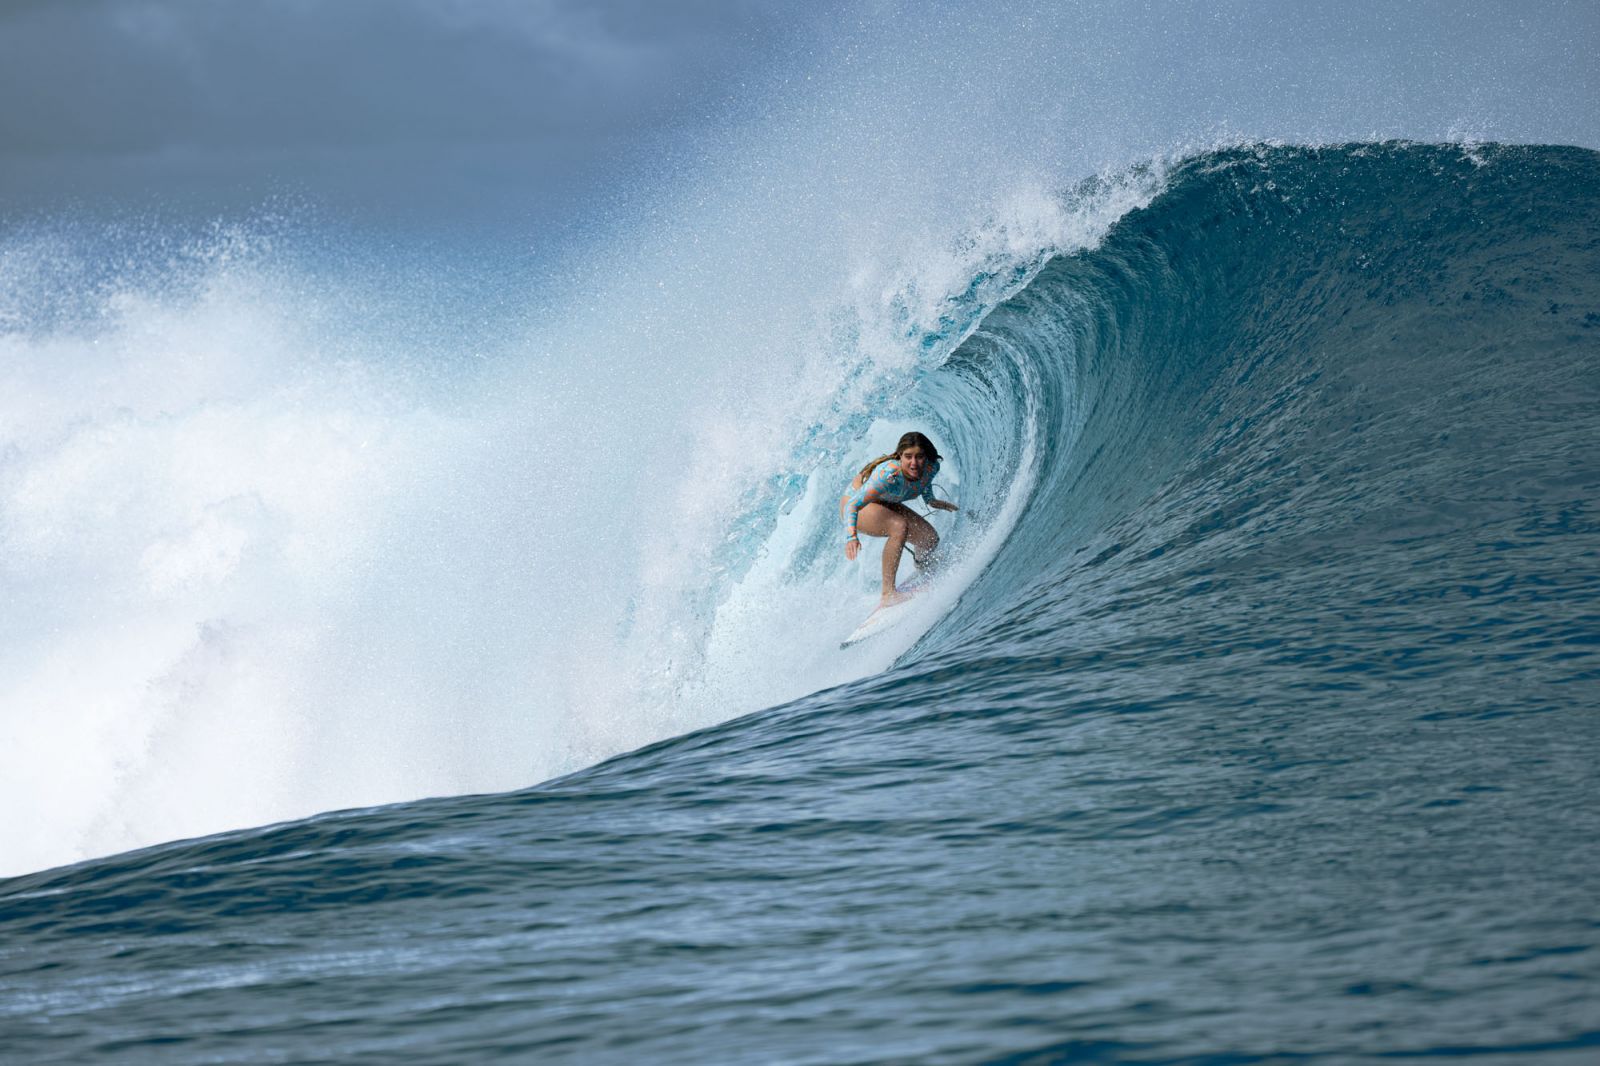 Caroline Marks ROXY pro Surf